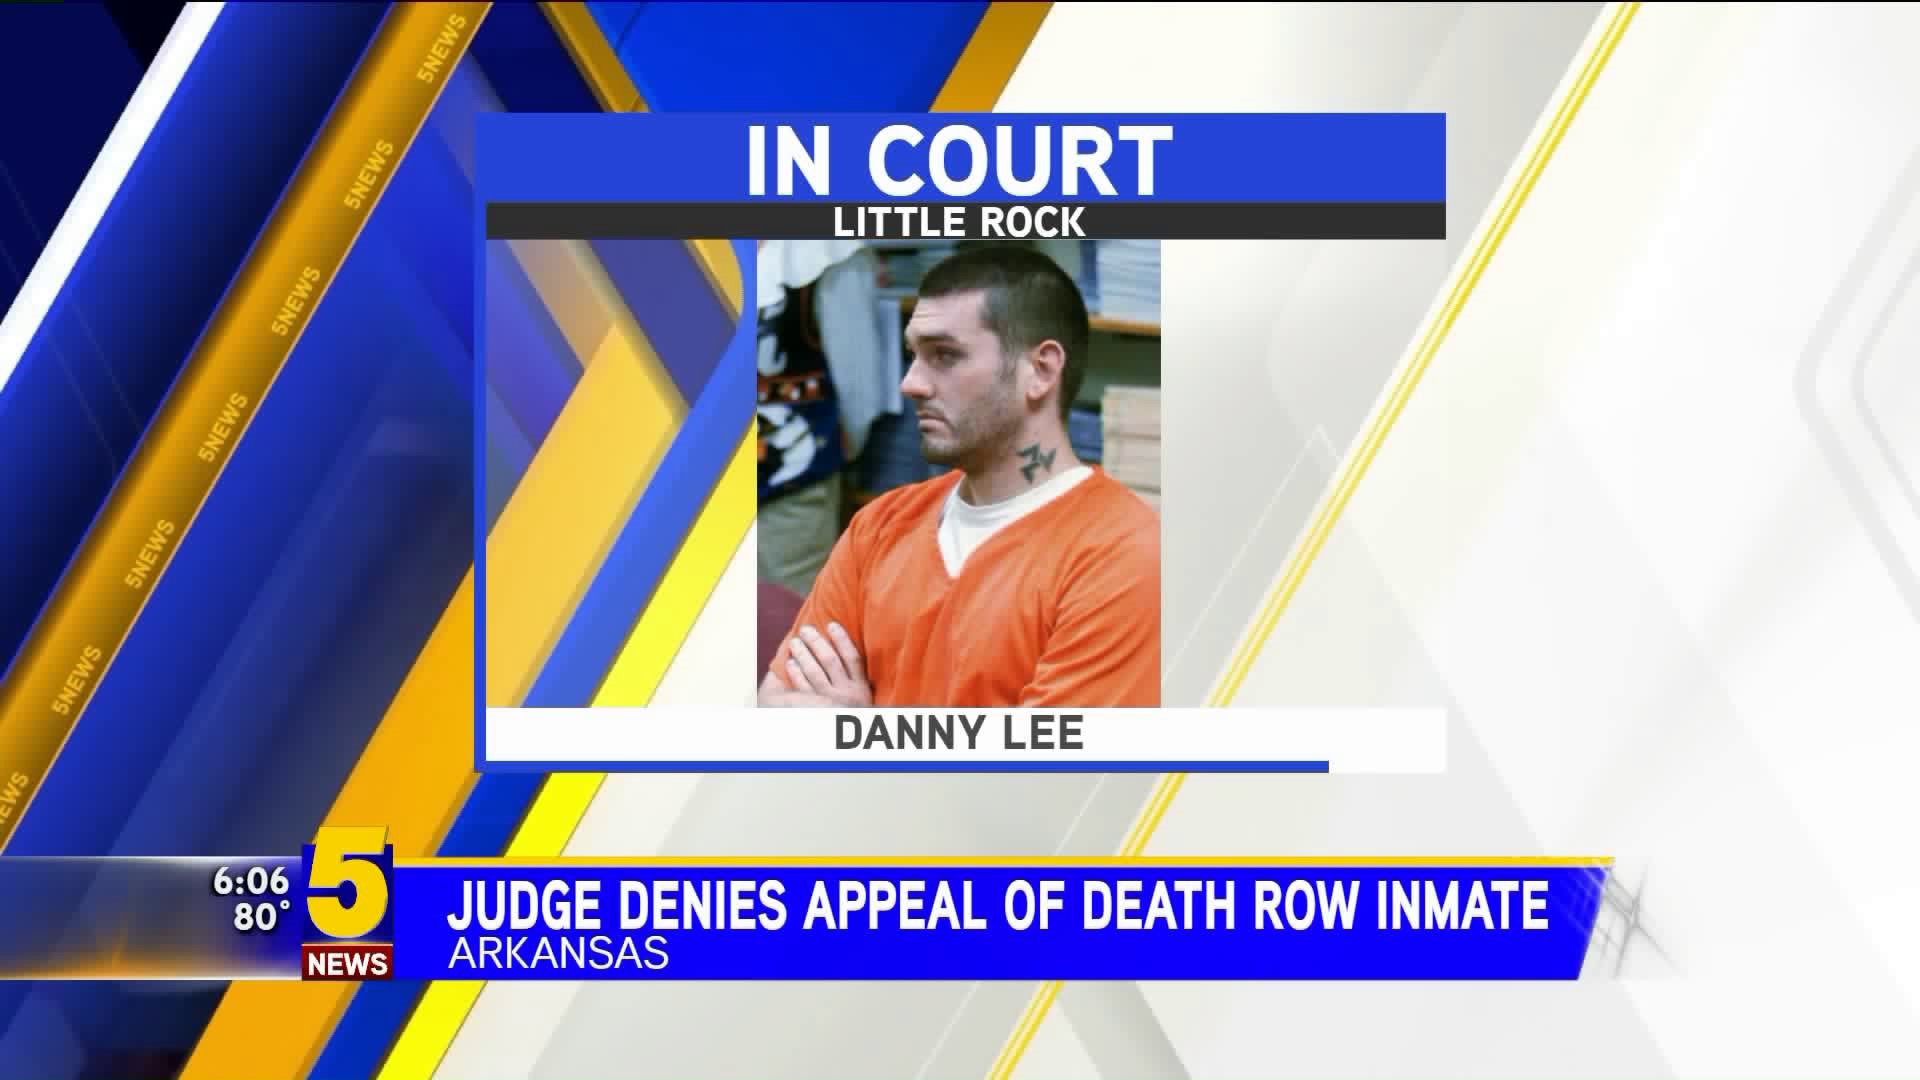 Judge Denies Appeal of Death Row Inmate